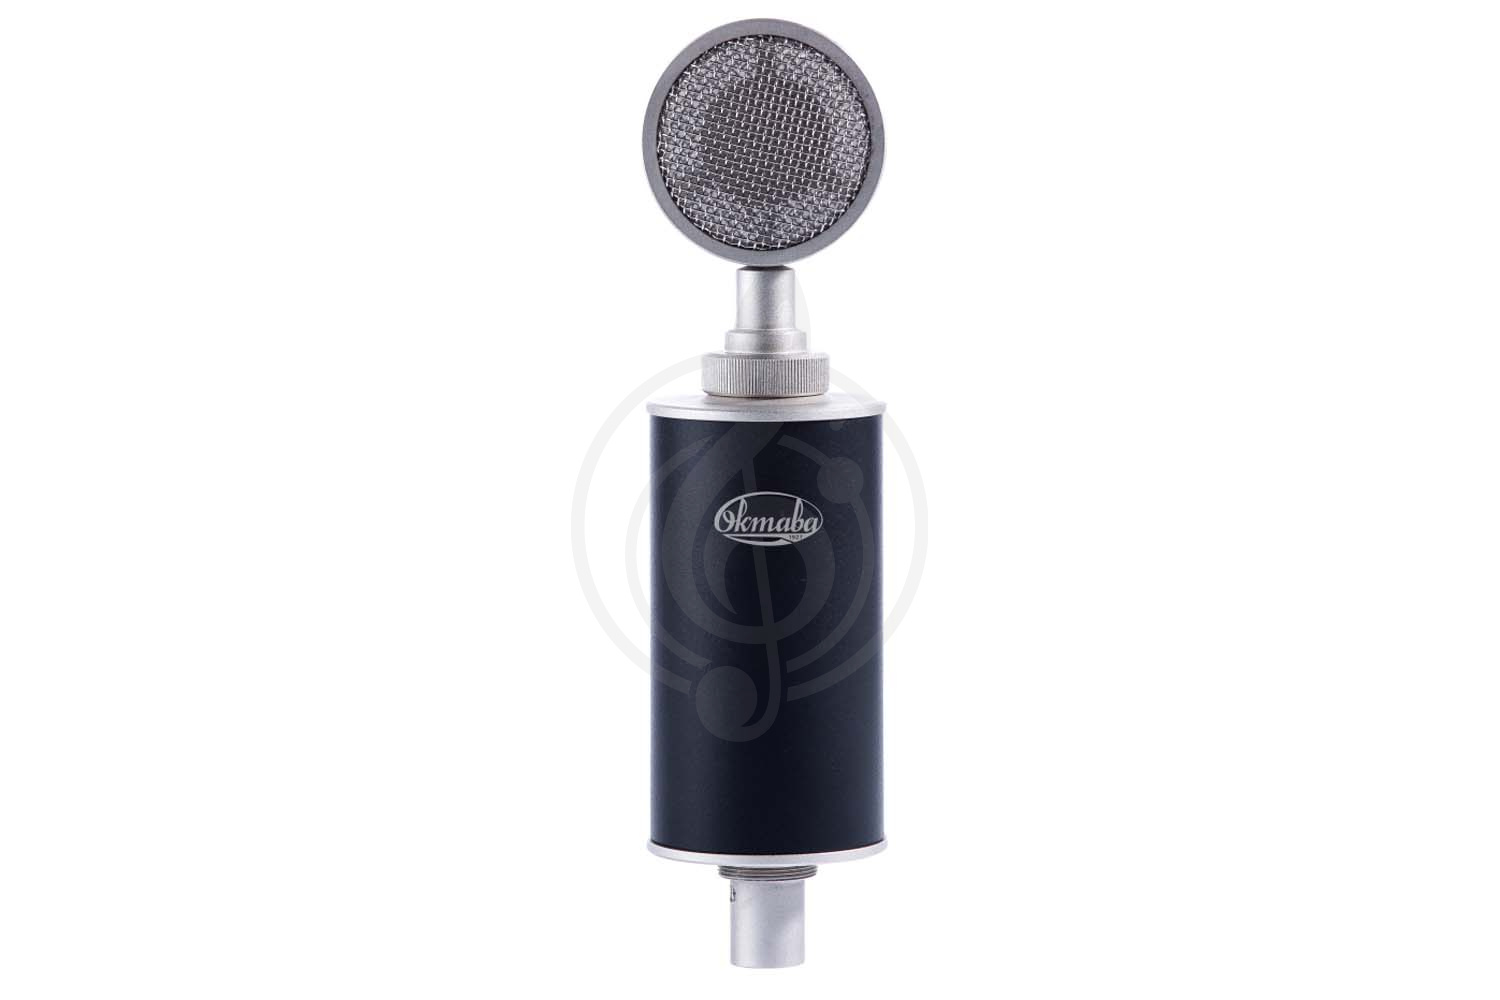 Конденсаторный студийный микрофон Конденсаторные студийные микрофоны Октава Октава МК-117-b - микрофон широкомембранный конденсаторный, черный МК-117-b - фото 1